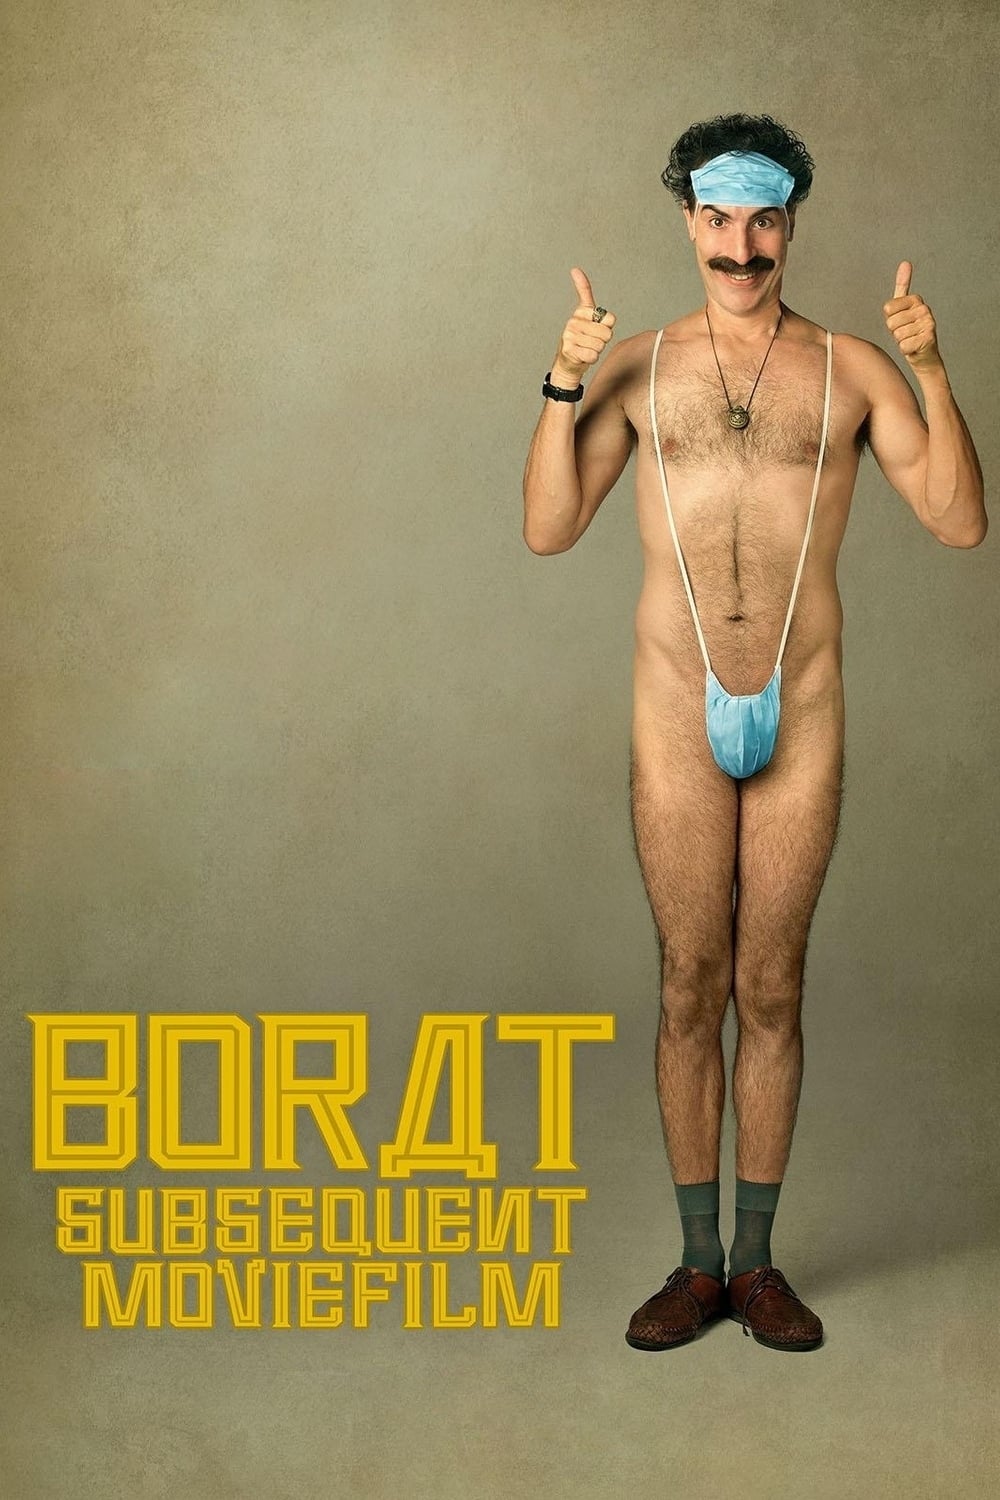 Poster de la película "Borat Subsequent Moviefilm"